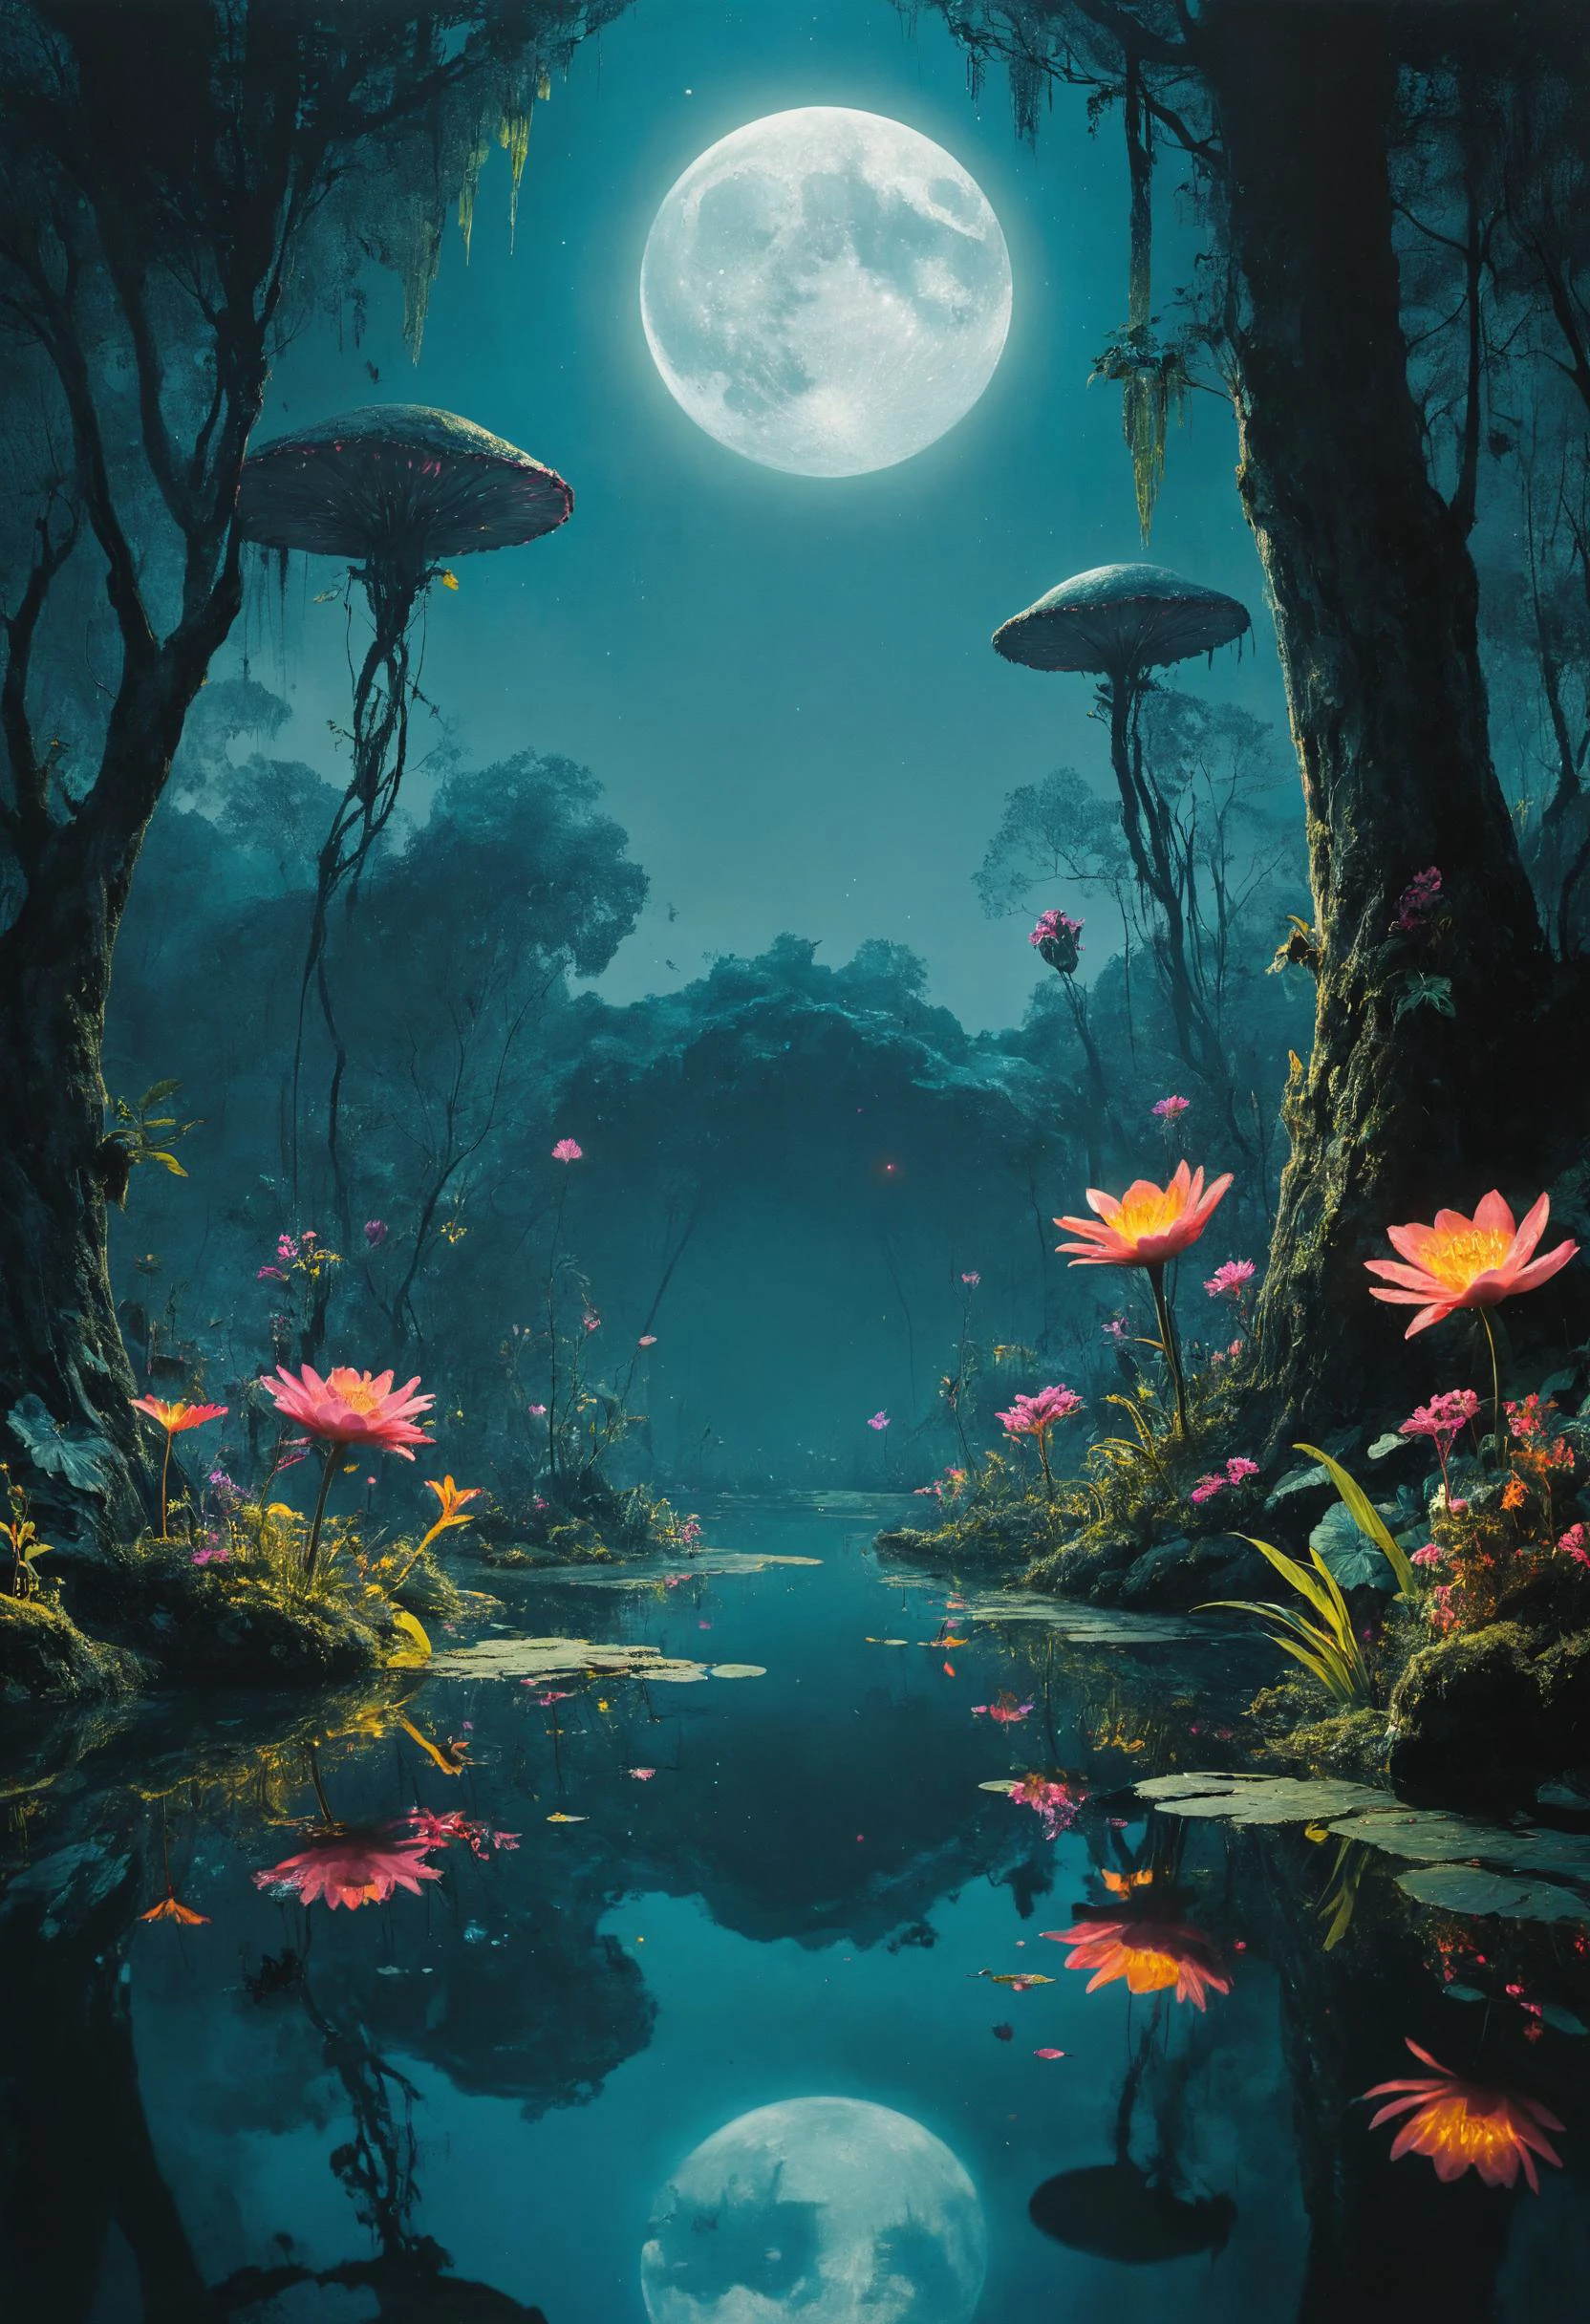 外星景观, 装饰着异国鲜花的水上花园, 镜子般的湖泊倒映着周围的森林 , 外来植物, 月光, 黑光化妆, 很好的灯光,  